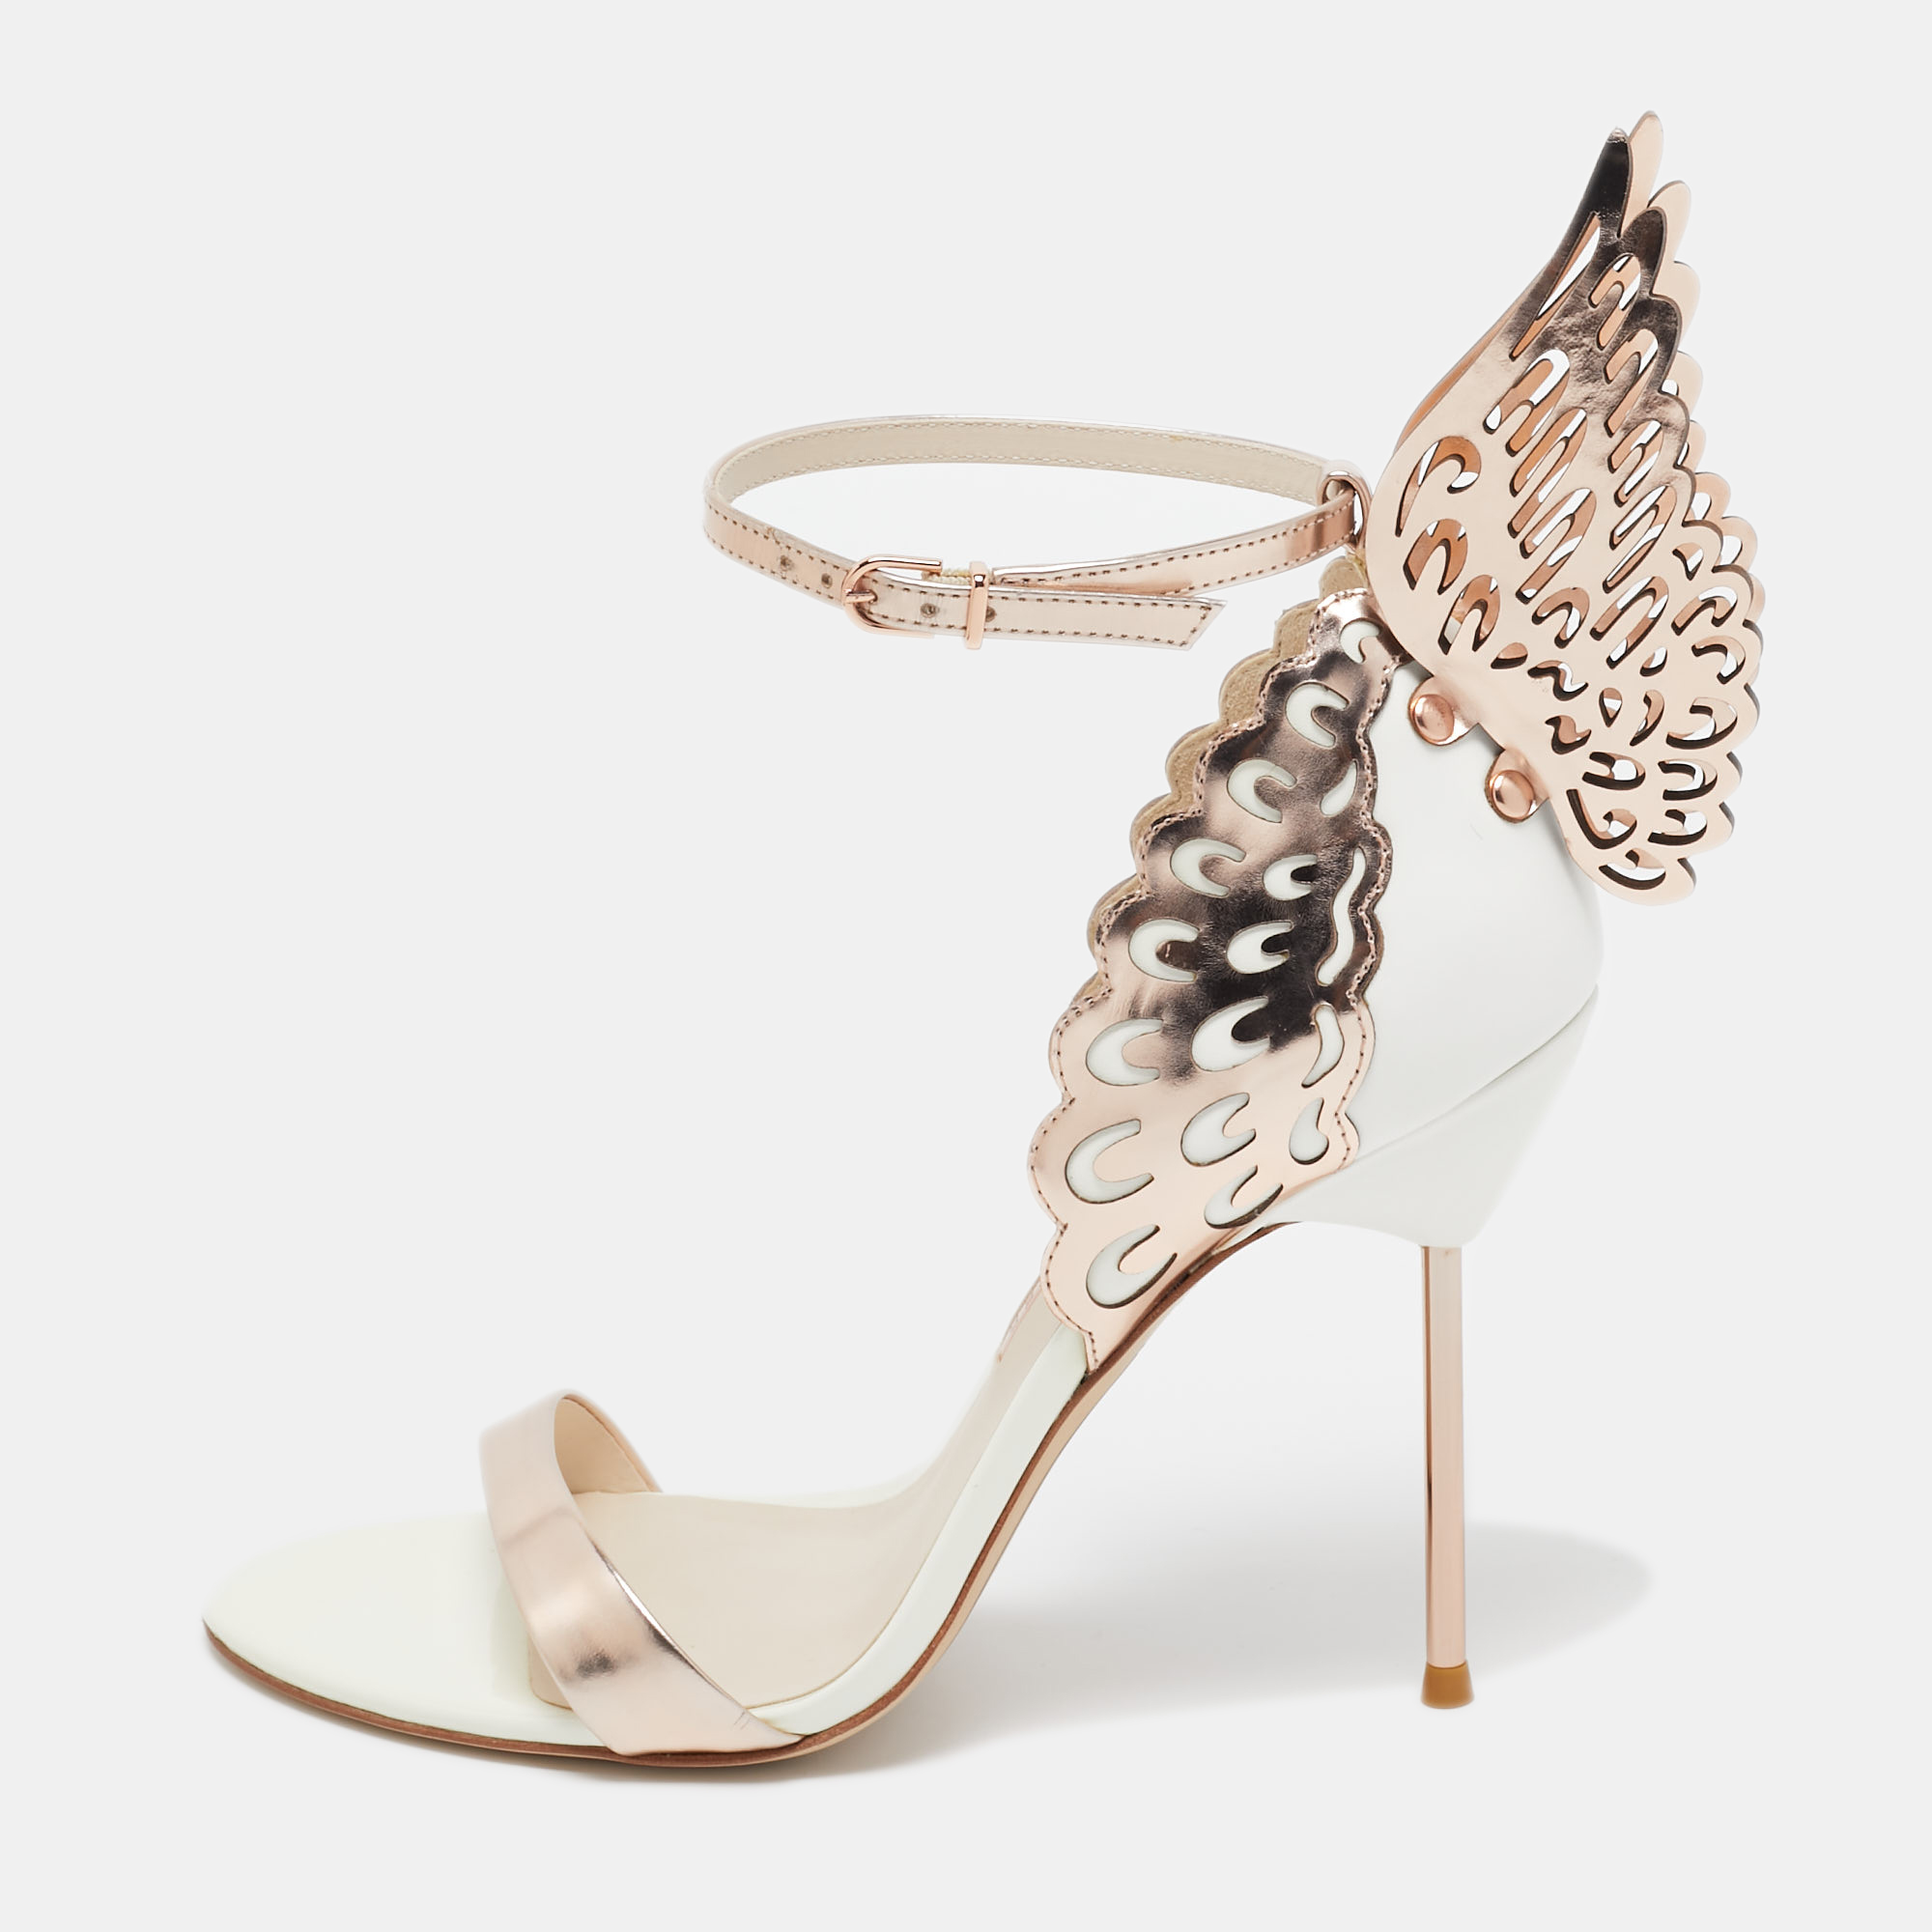 Sophia Webster Gold/White  Leather Evangeline Ankle Strap Sandals Size 40.5